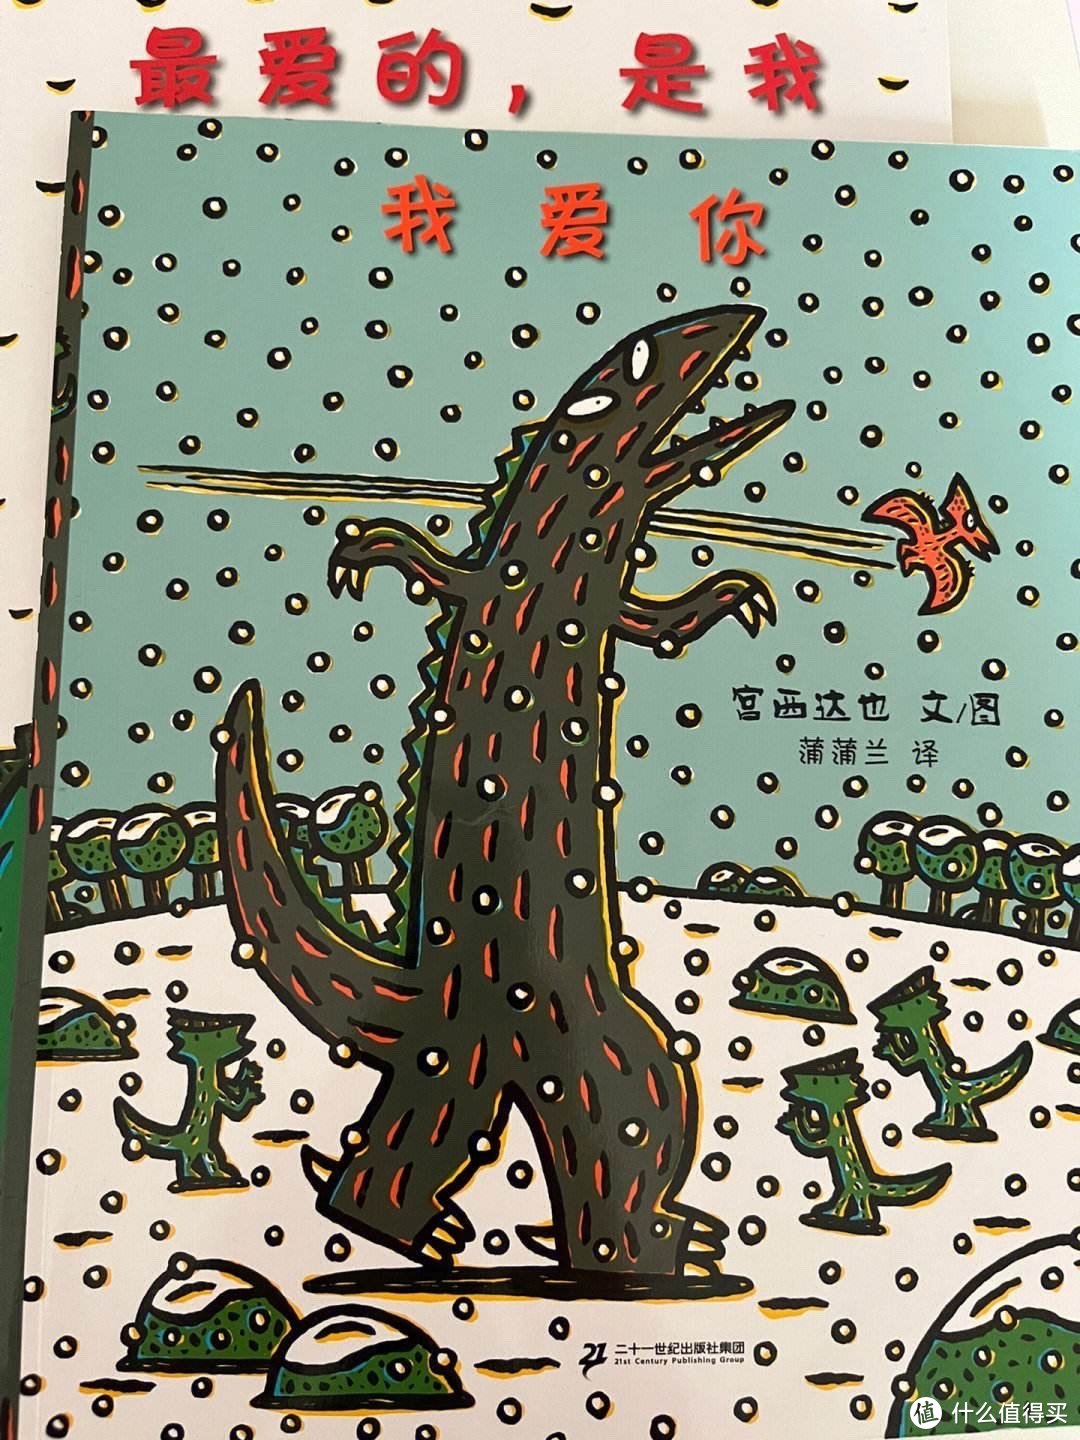 宫西达也这套《恐龙系列》绘本，真的太好哭了！